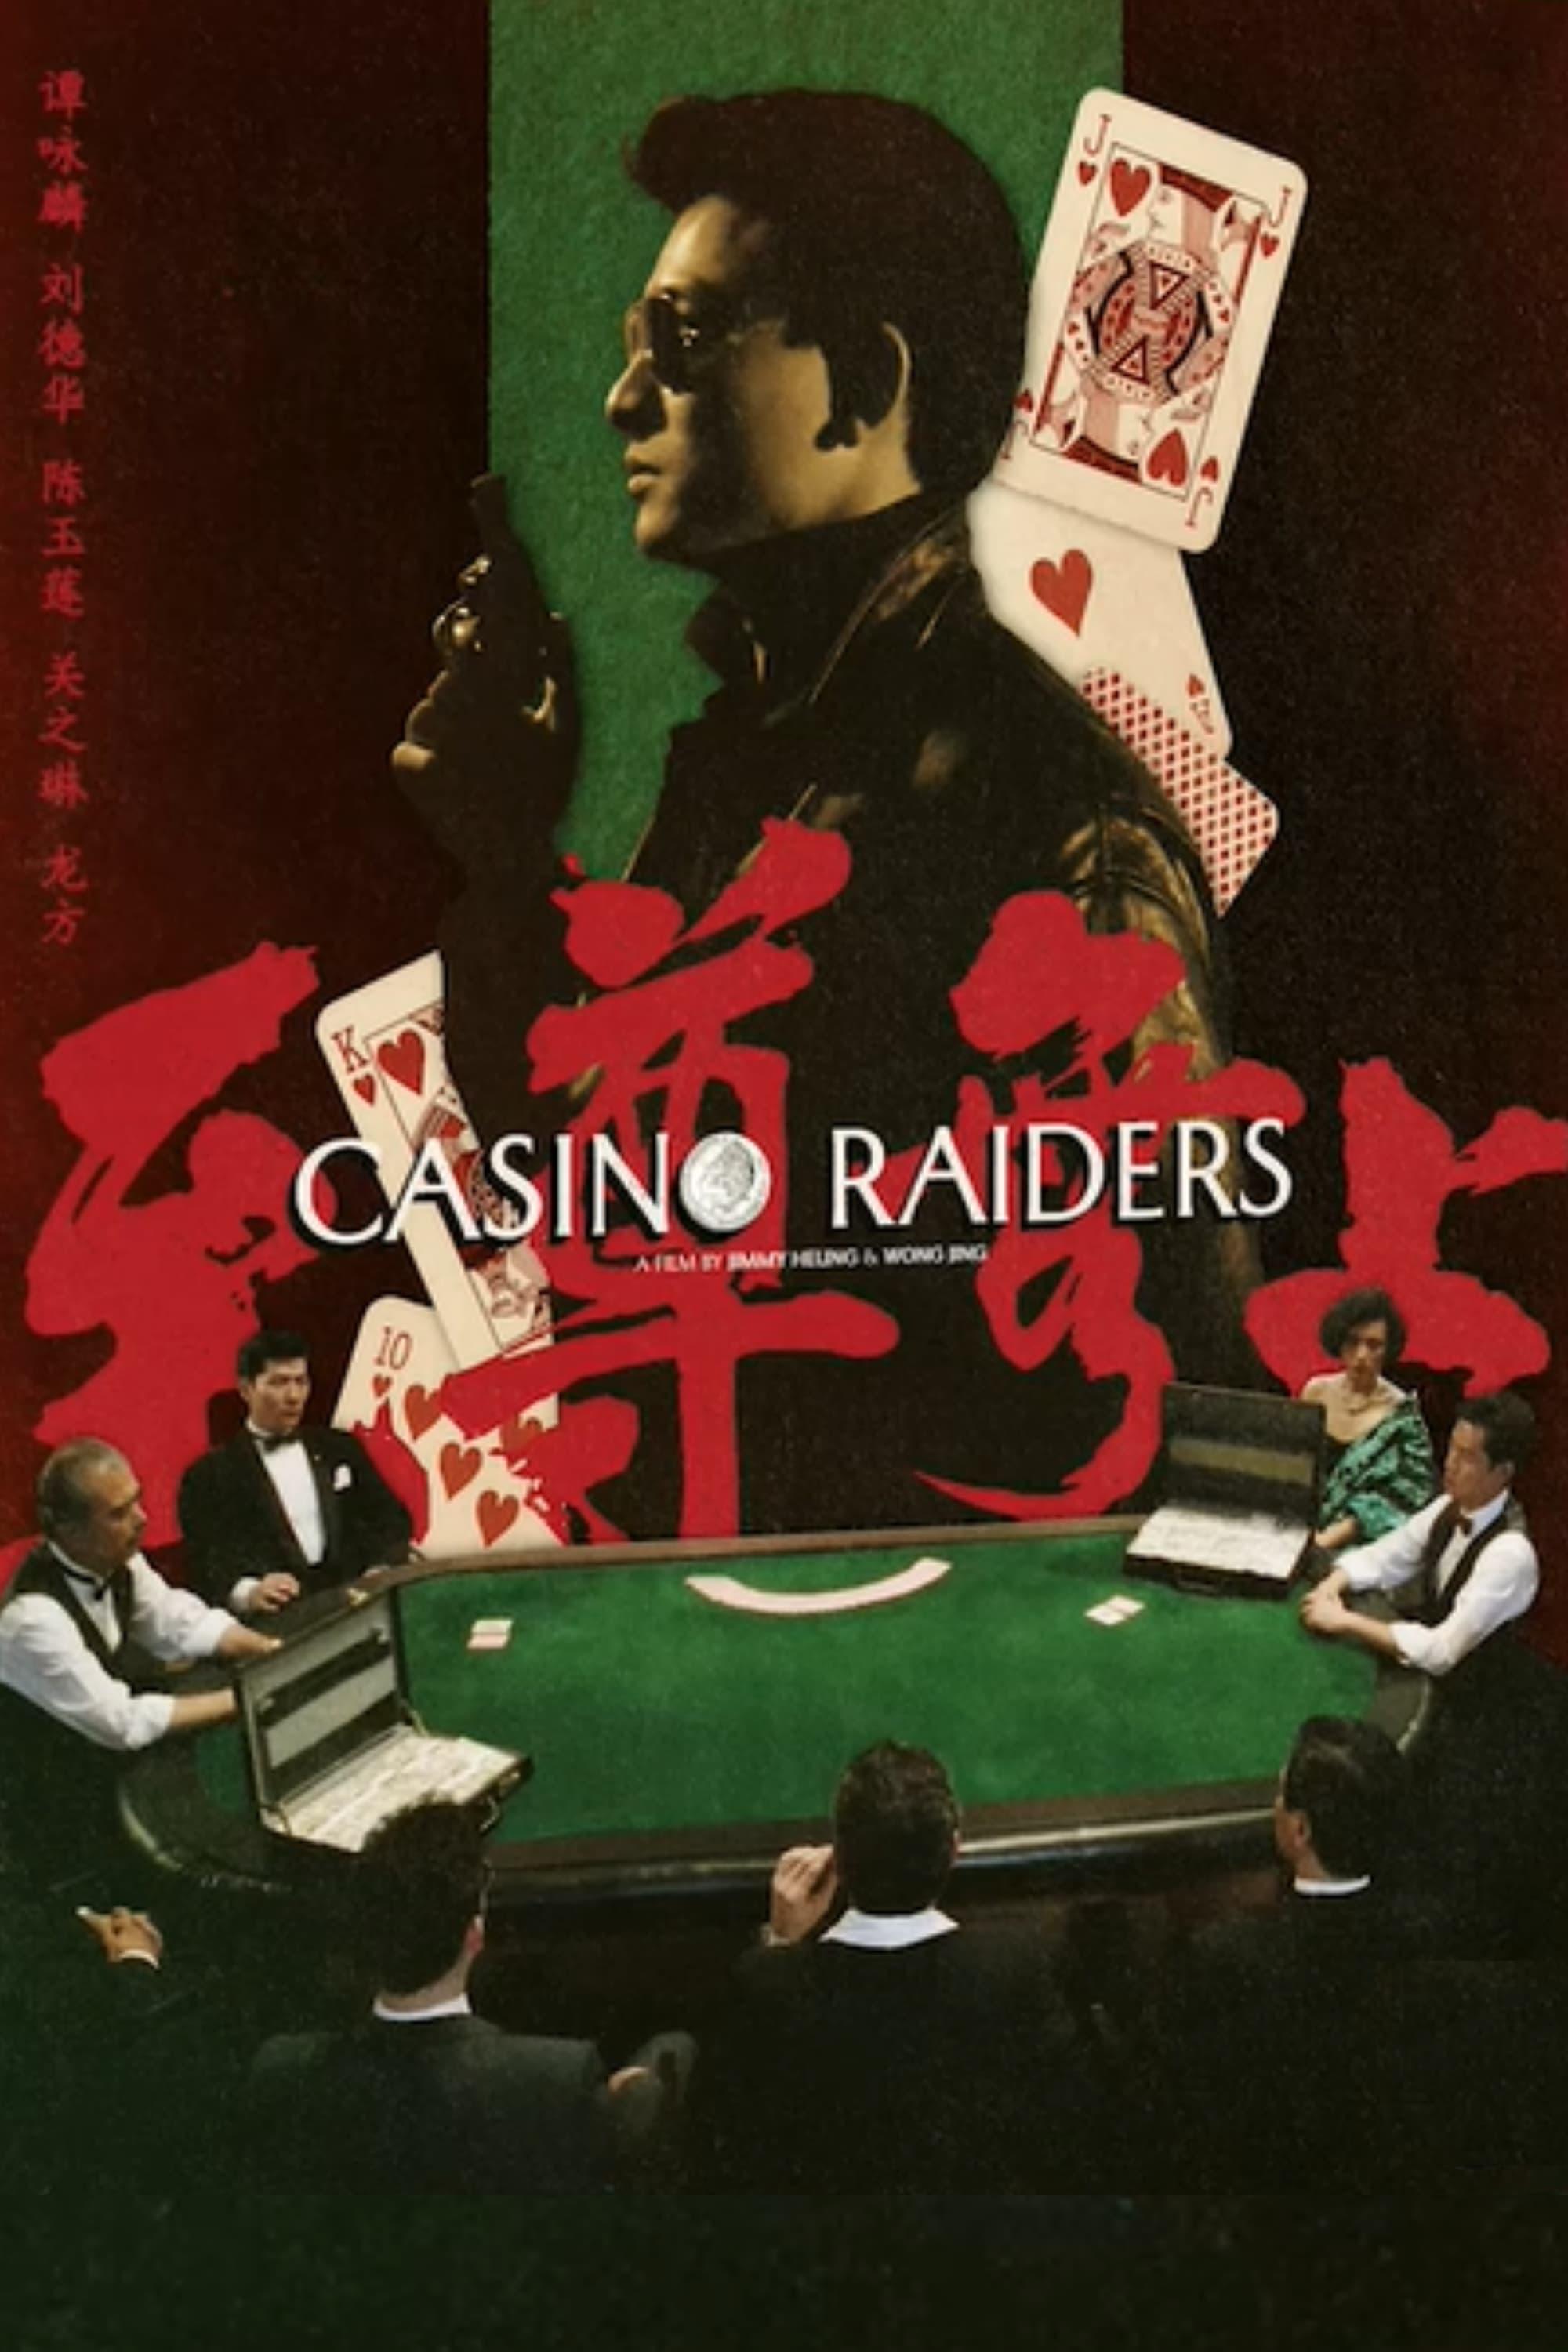 Casino Raiders poster